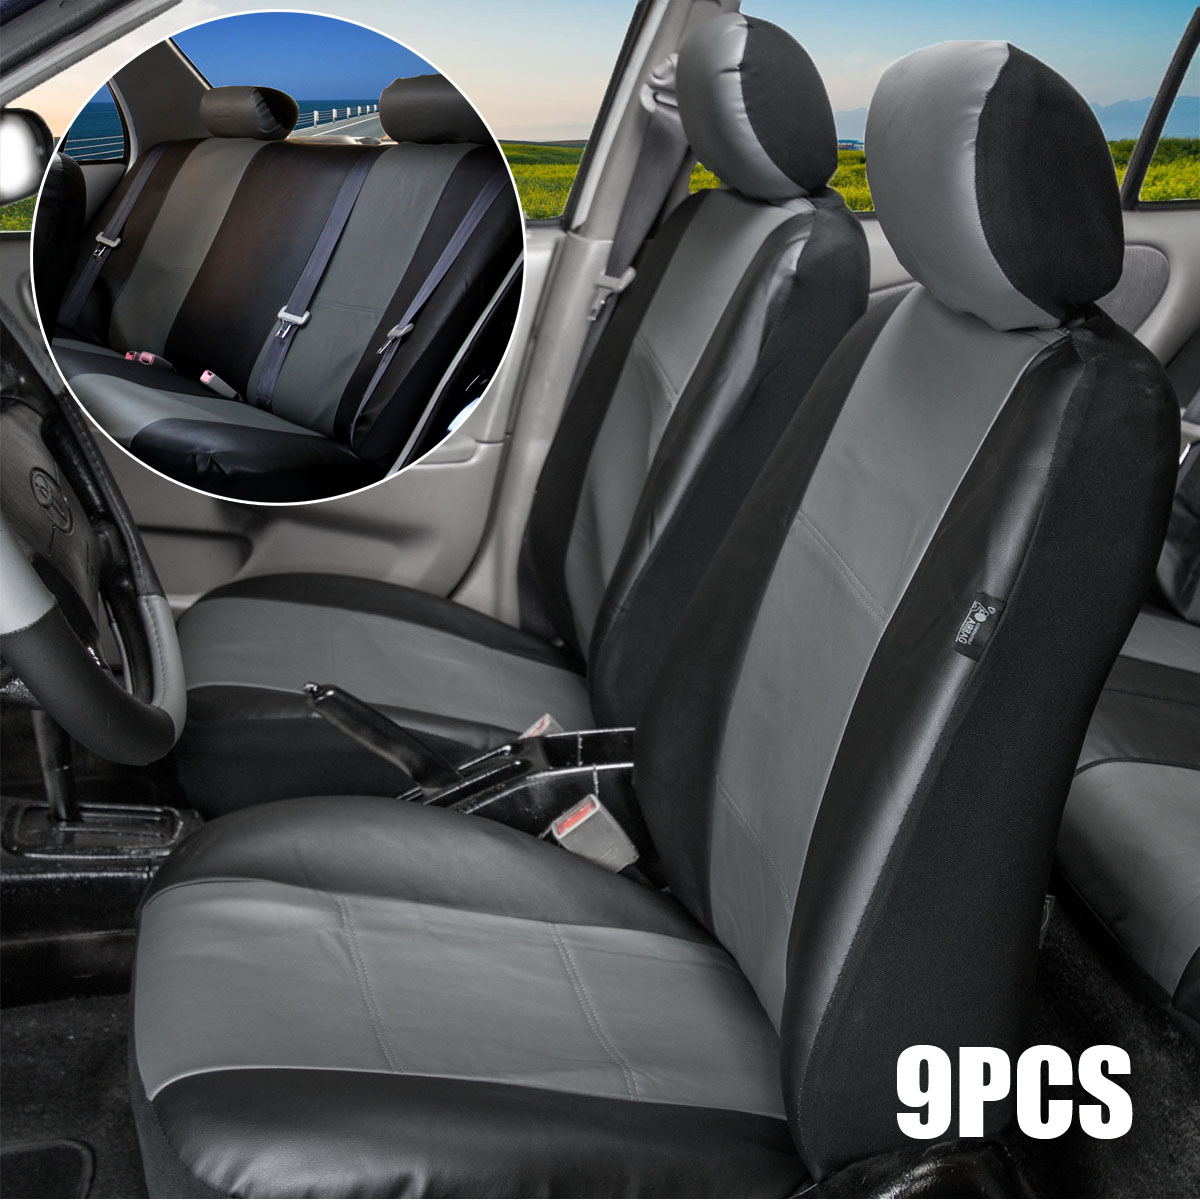 

9cs черный + серый универсальный 5-местный Авто универсальный автоматический чехол для подушки сиденья протектор